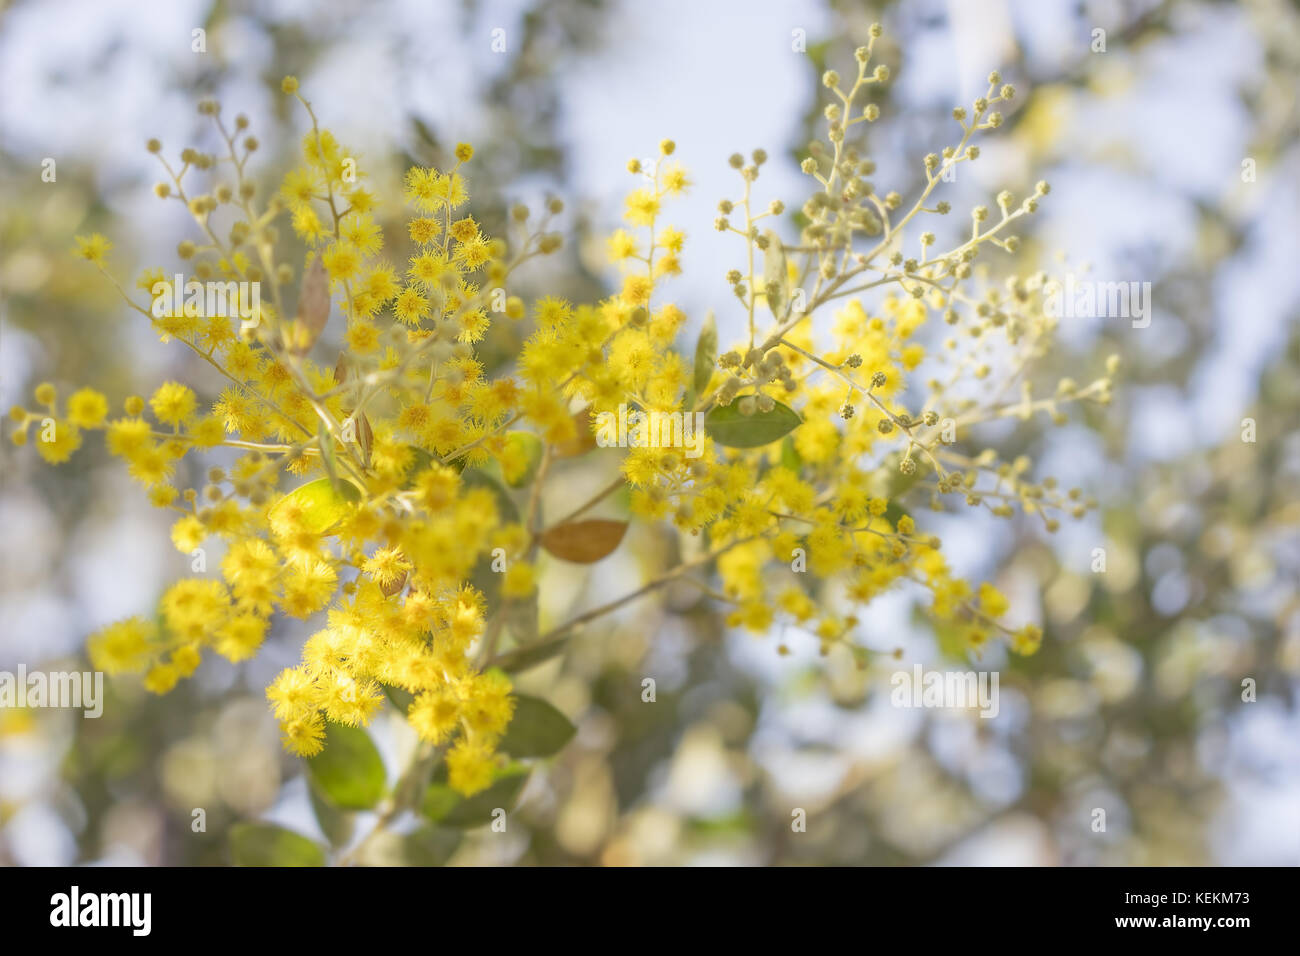 Mattina in Australia la boccola con la luce del sole su australian giallo oro albero di bargiglio blossoms Foto Stock